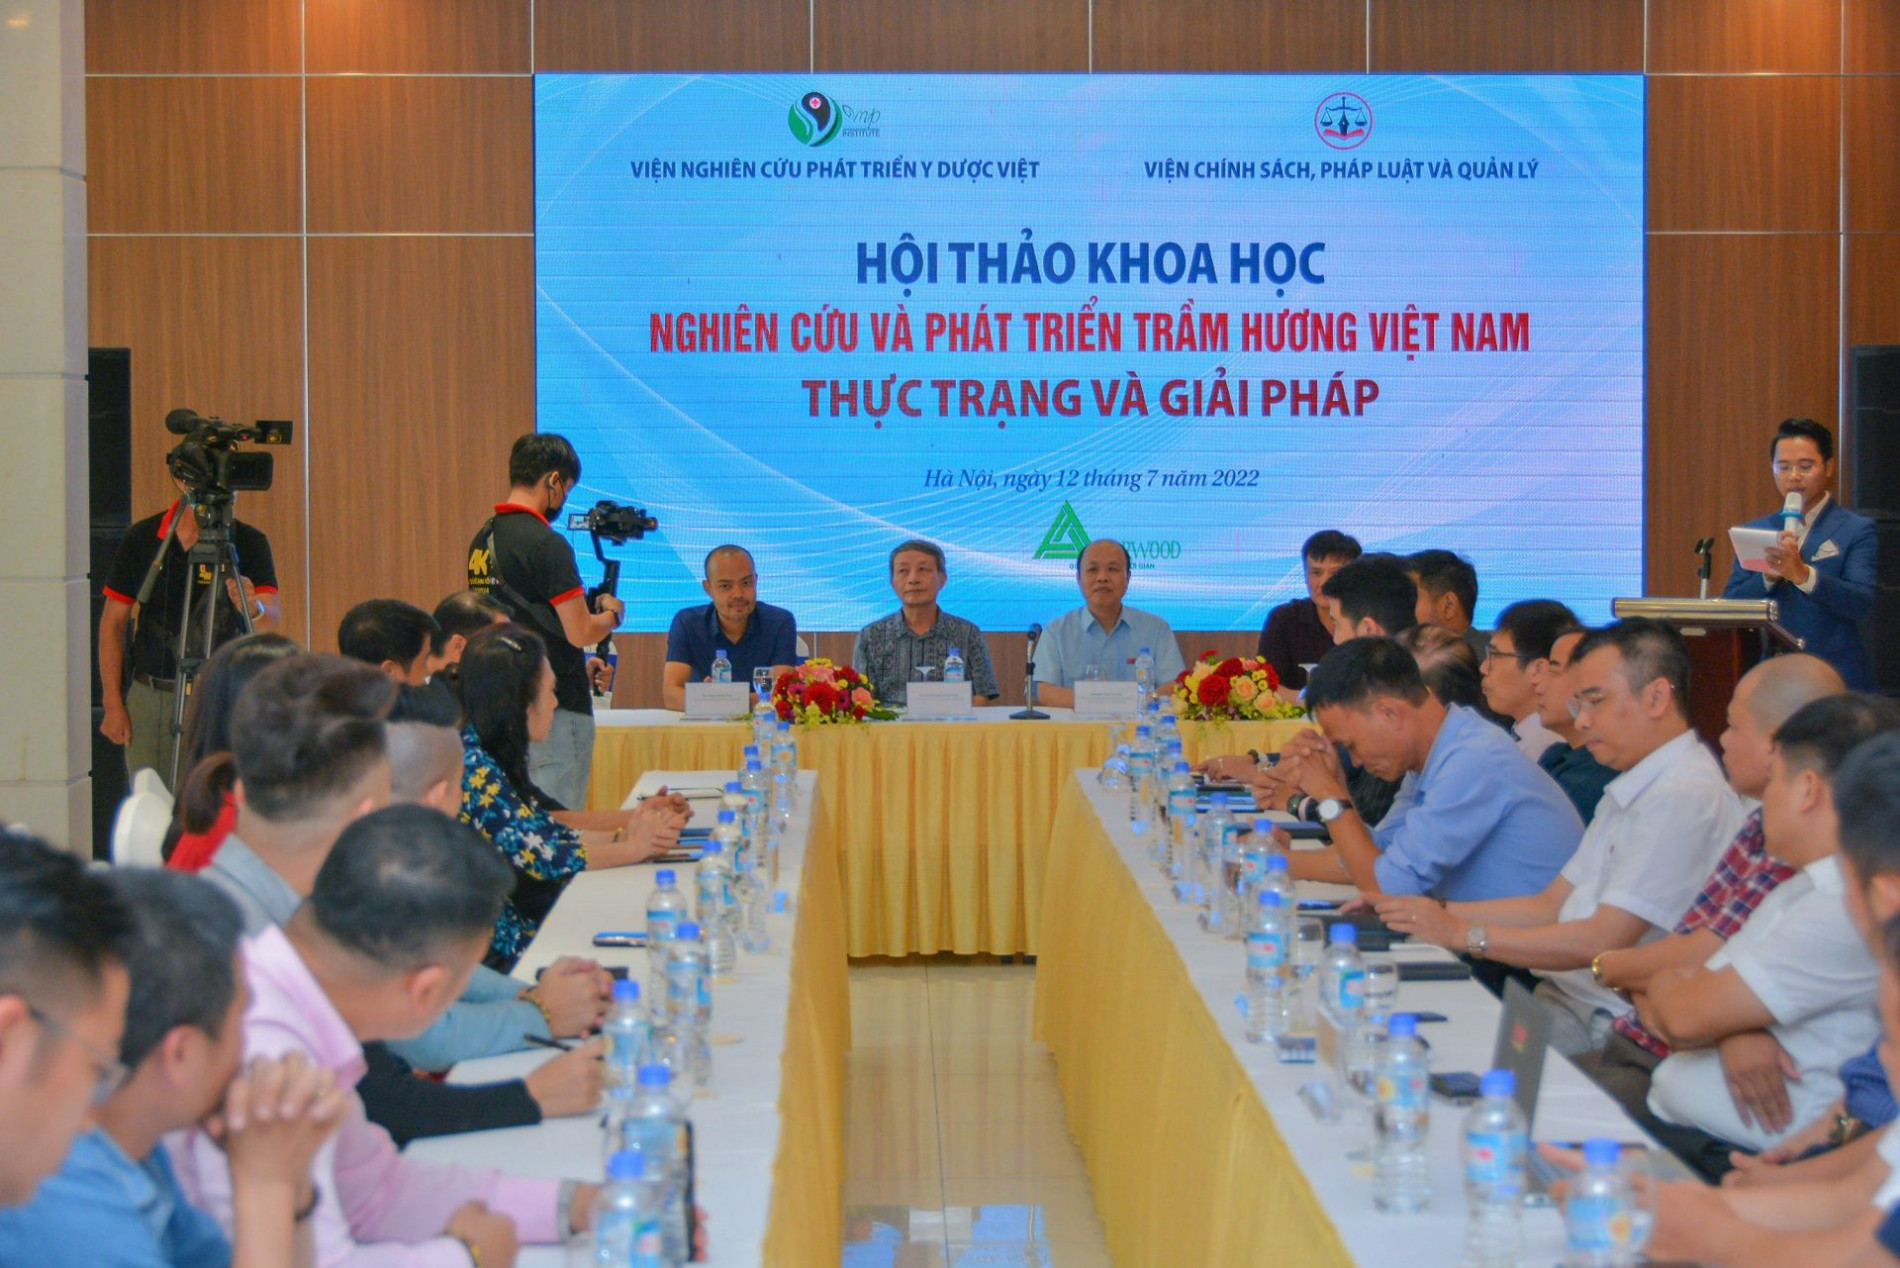 Nghiên cứu và phát triển trầm hương Việt Nam – Thực trạng và Giải pháp